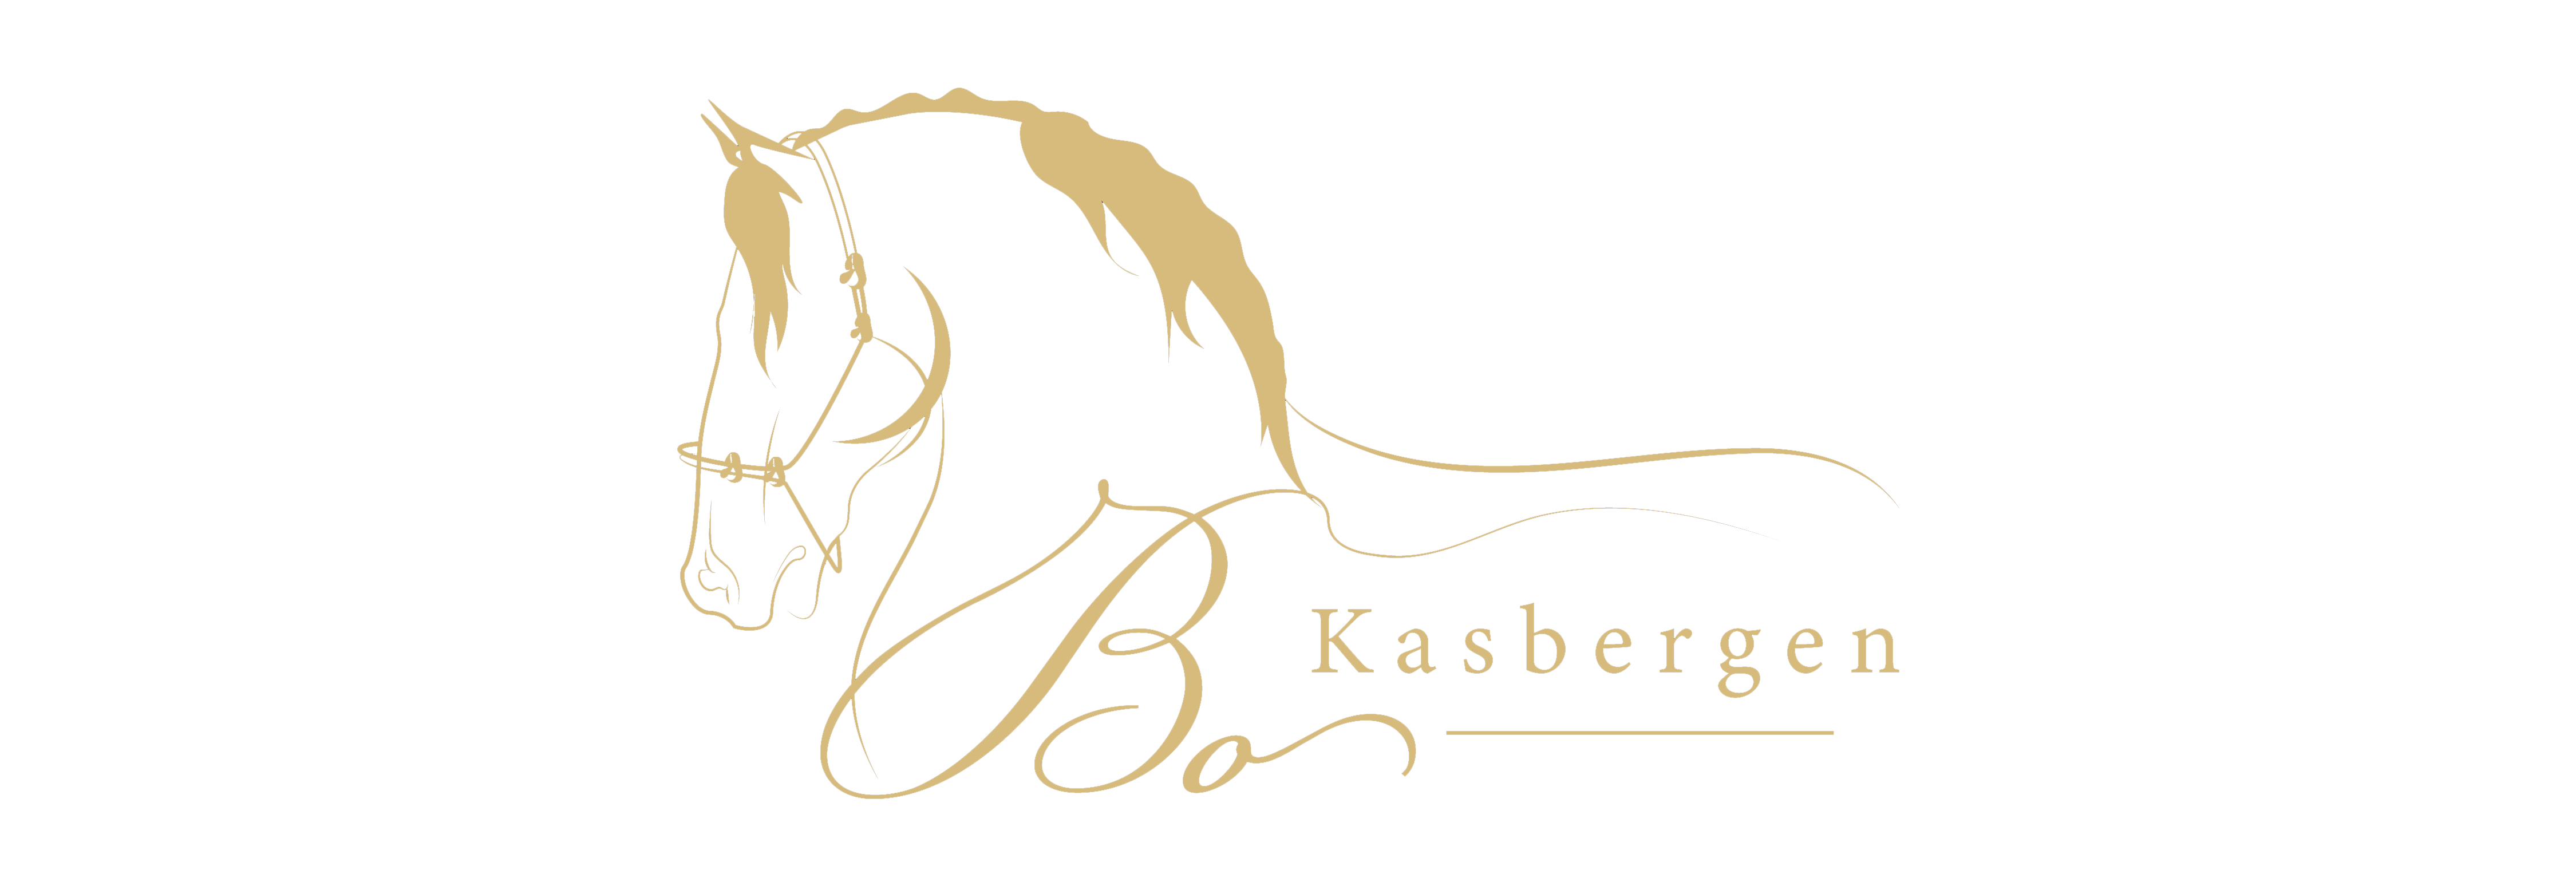 Bo Kasbergen